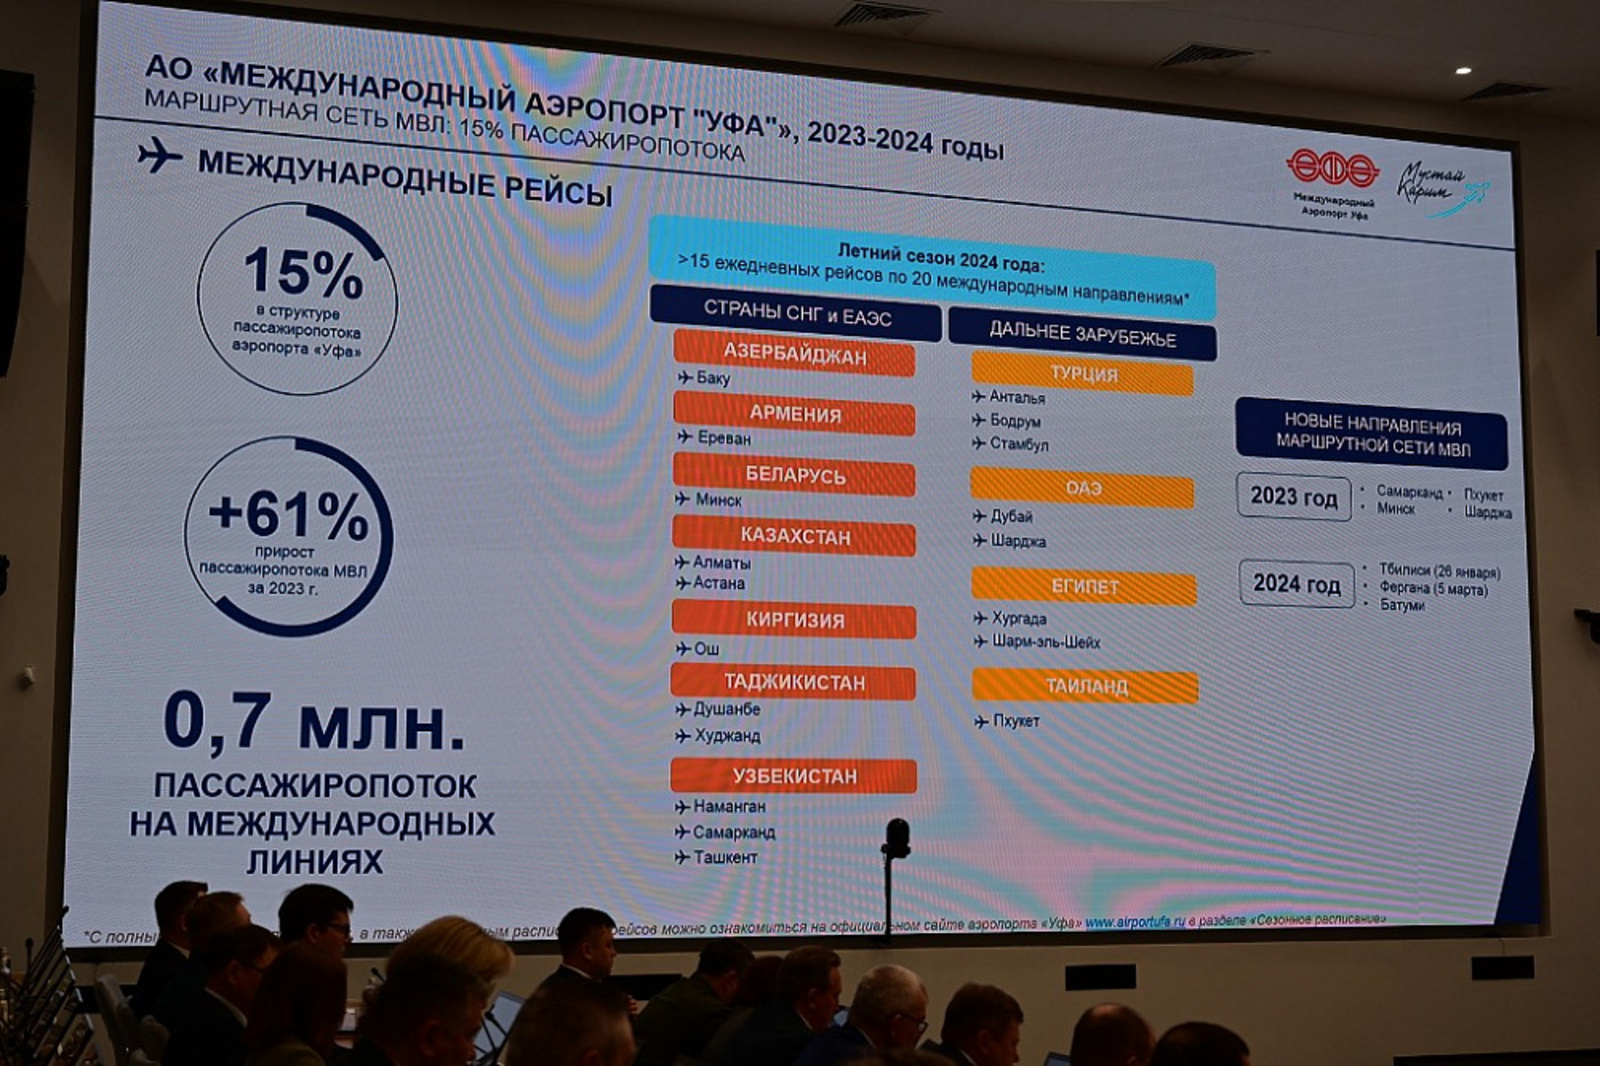 Годовой пассажиропоток аэропорта «Уфа» к 2030 году планируют увеличить до 7 миллионов человек